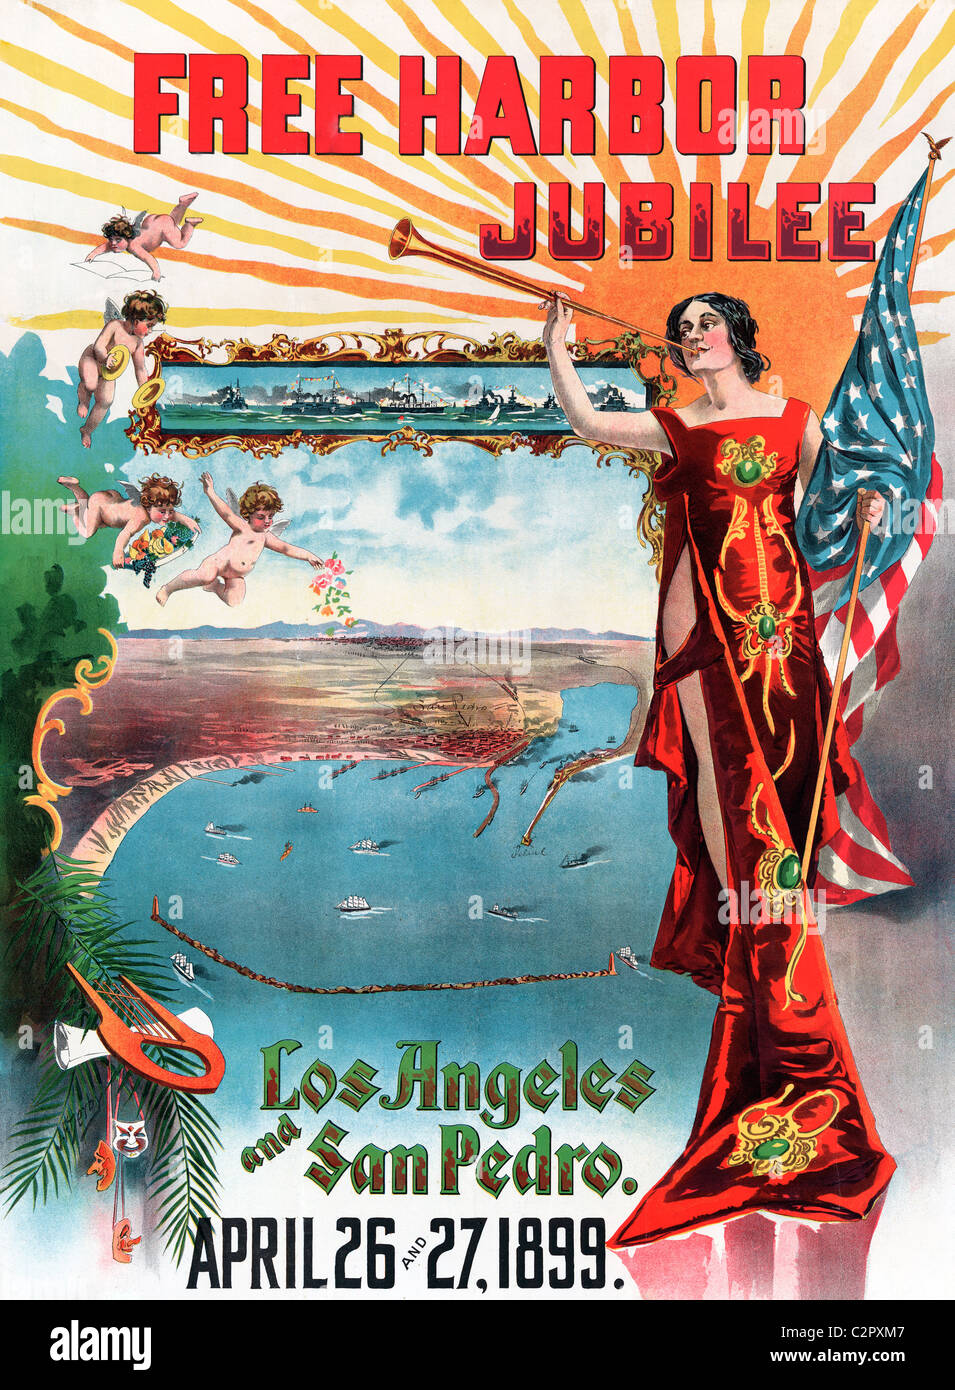 Port gratuit Poster du Jubilé, Los Angeles et San Pedro, en Californie, 26 et 27 avril, 1899 Banque D'Images